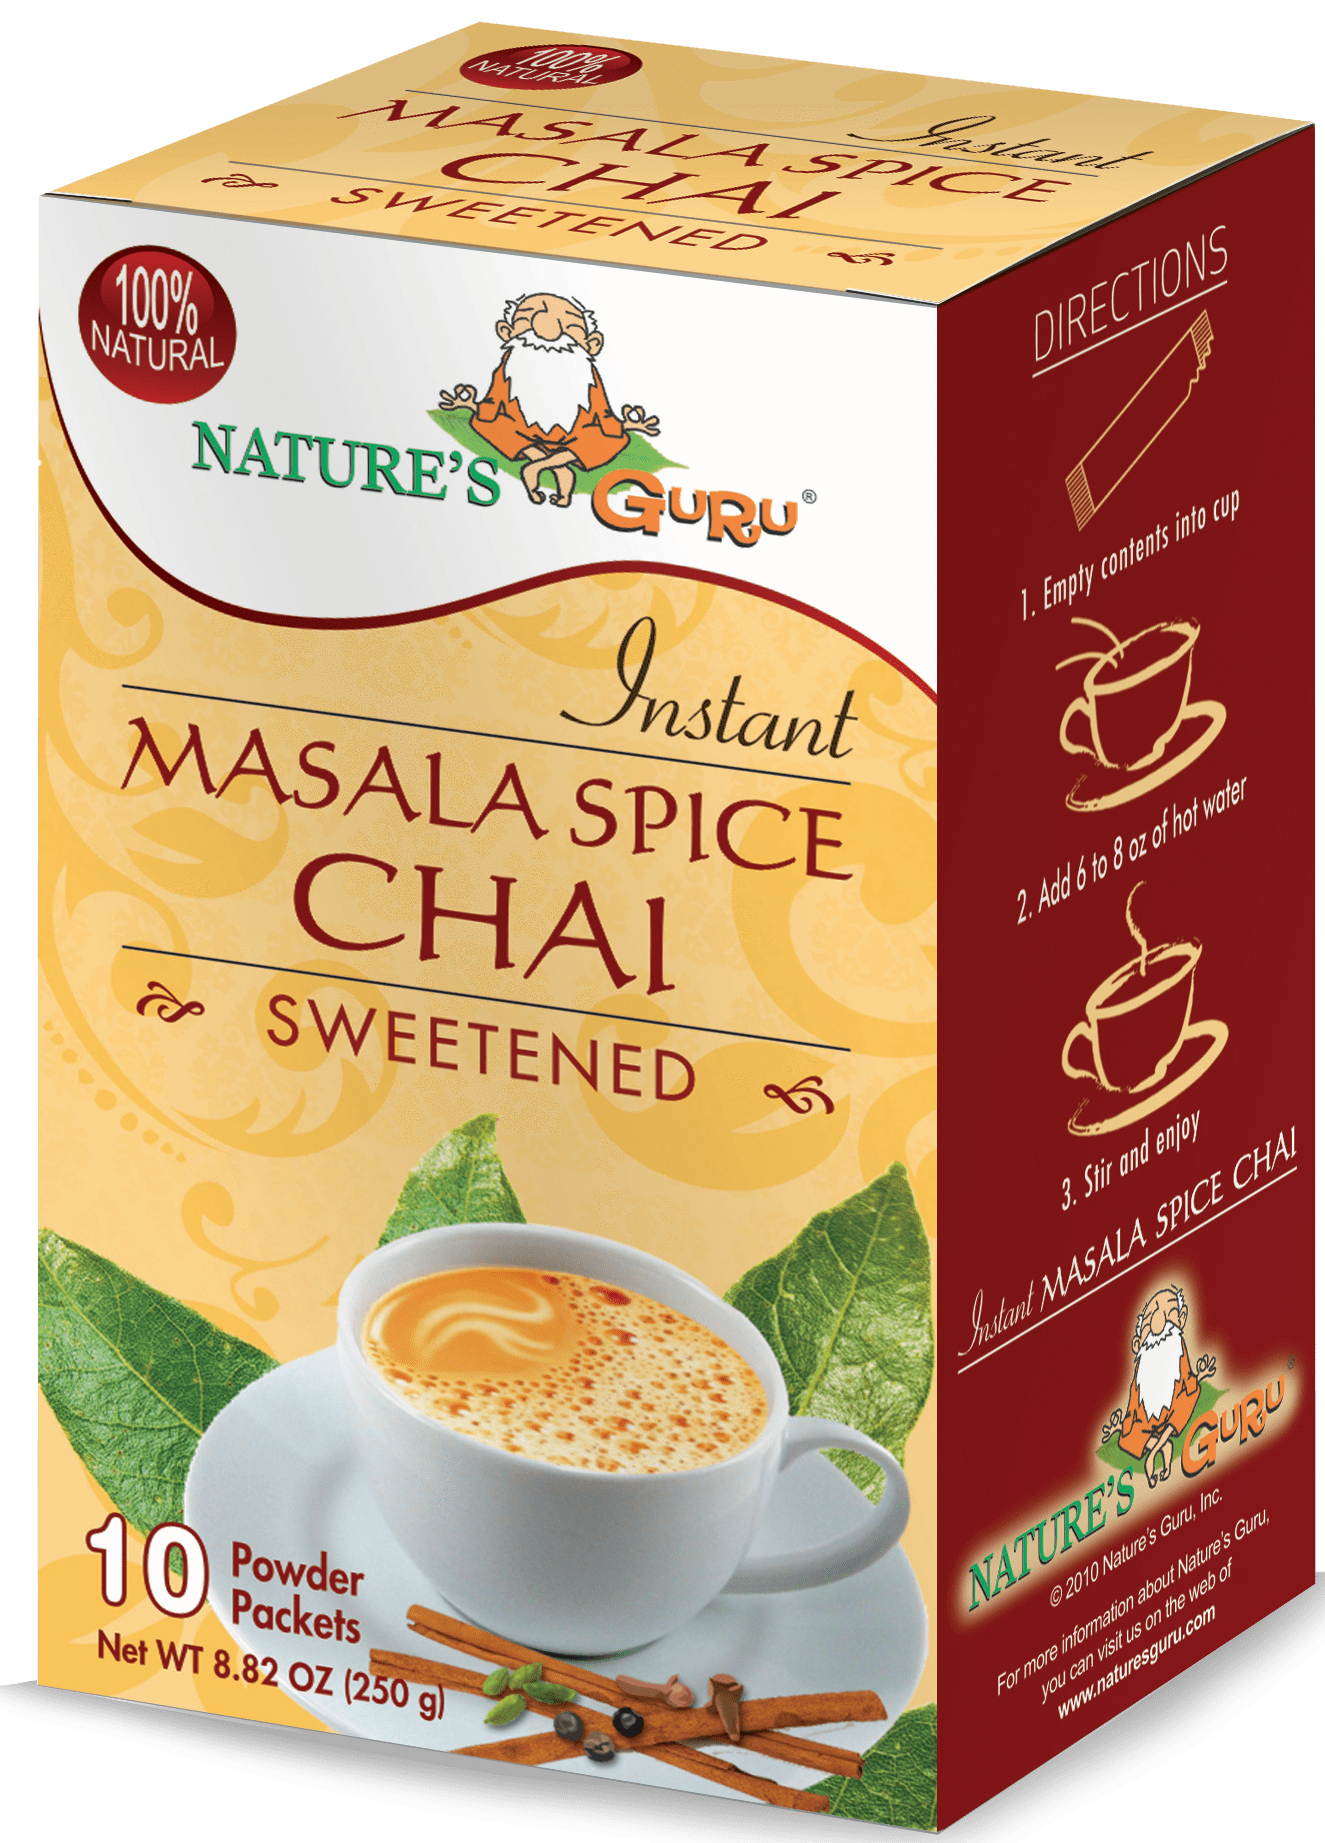 Chai (Indian Spiced Tea) - The Spice House